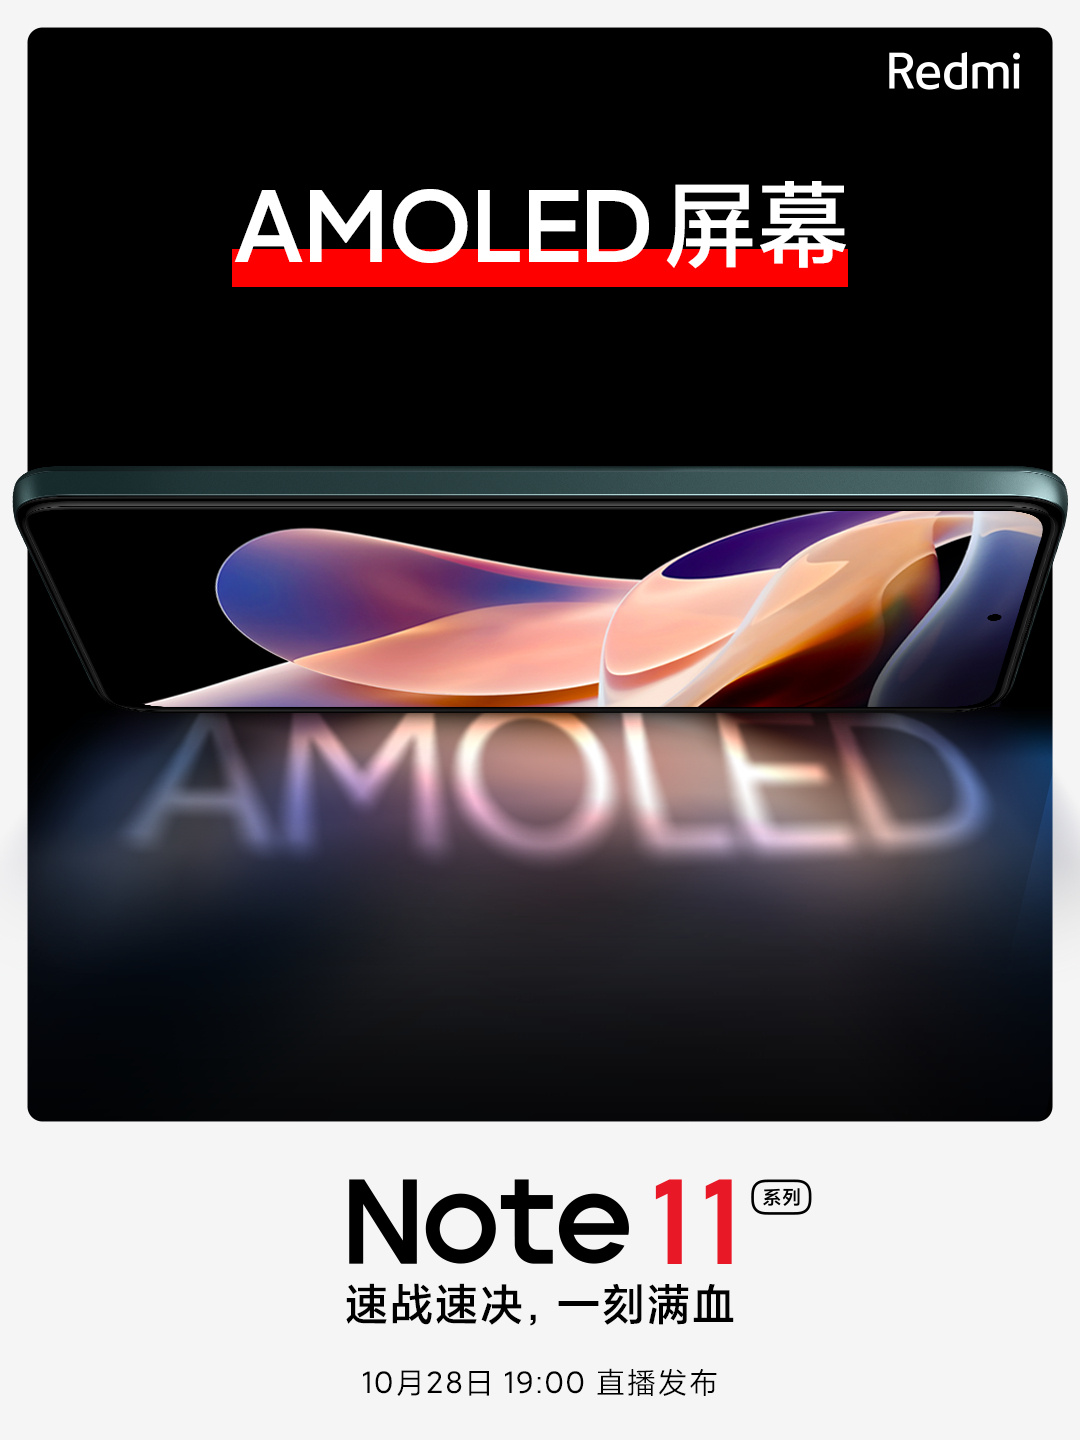  Xiaomi тизерит AMOLED-экраны в новом Redmi Note 11 Xiaomi  - xiaomi_tizerit_amoled_ekrany_v_redmi_note_11_no_est_nuans_picture2_0